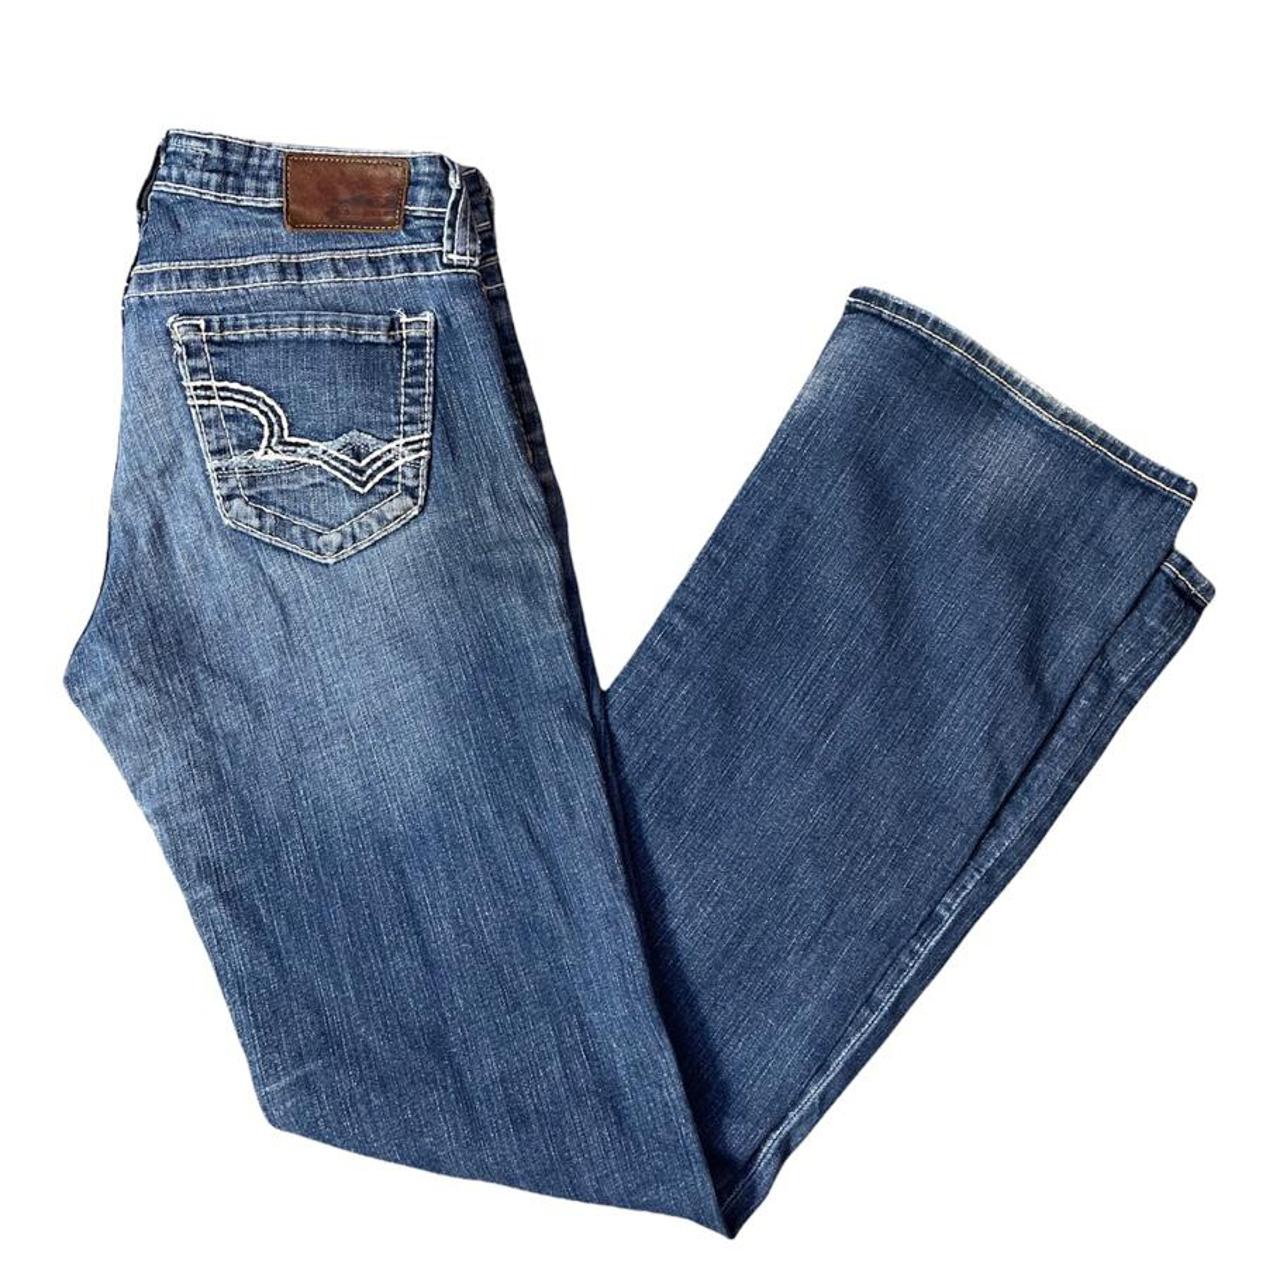 Big Star Bootcut Jeans Size: 34R Waist: 30”... - Depop